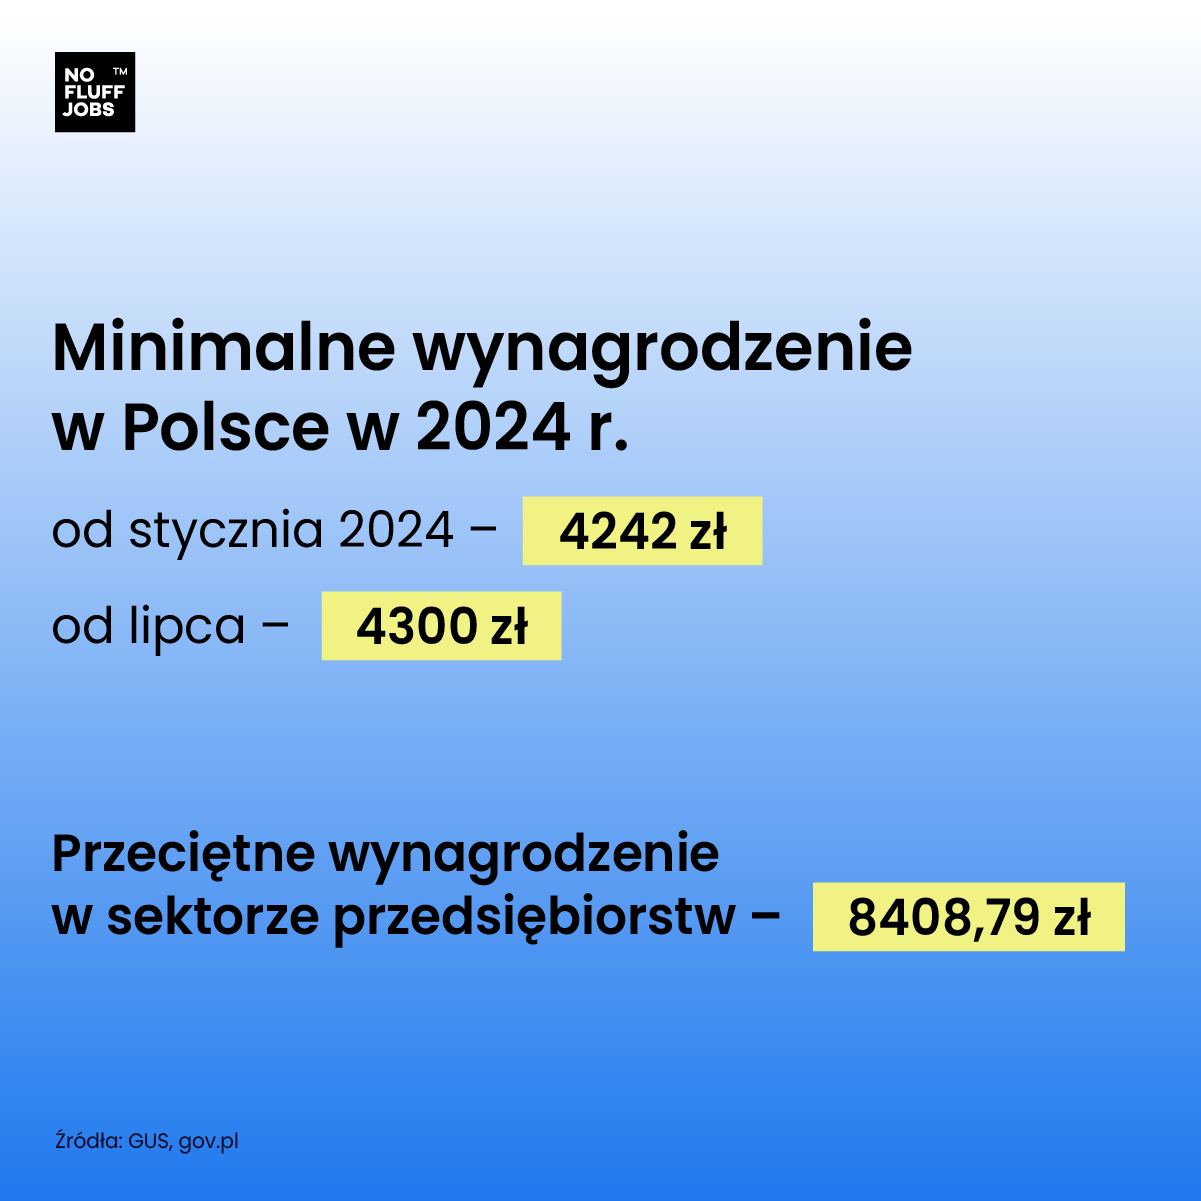 Minimalne i przeciętne wynagrodzenie w Polsce